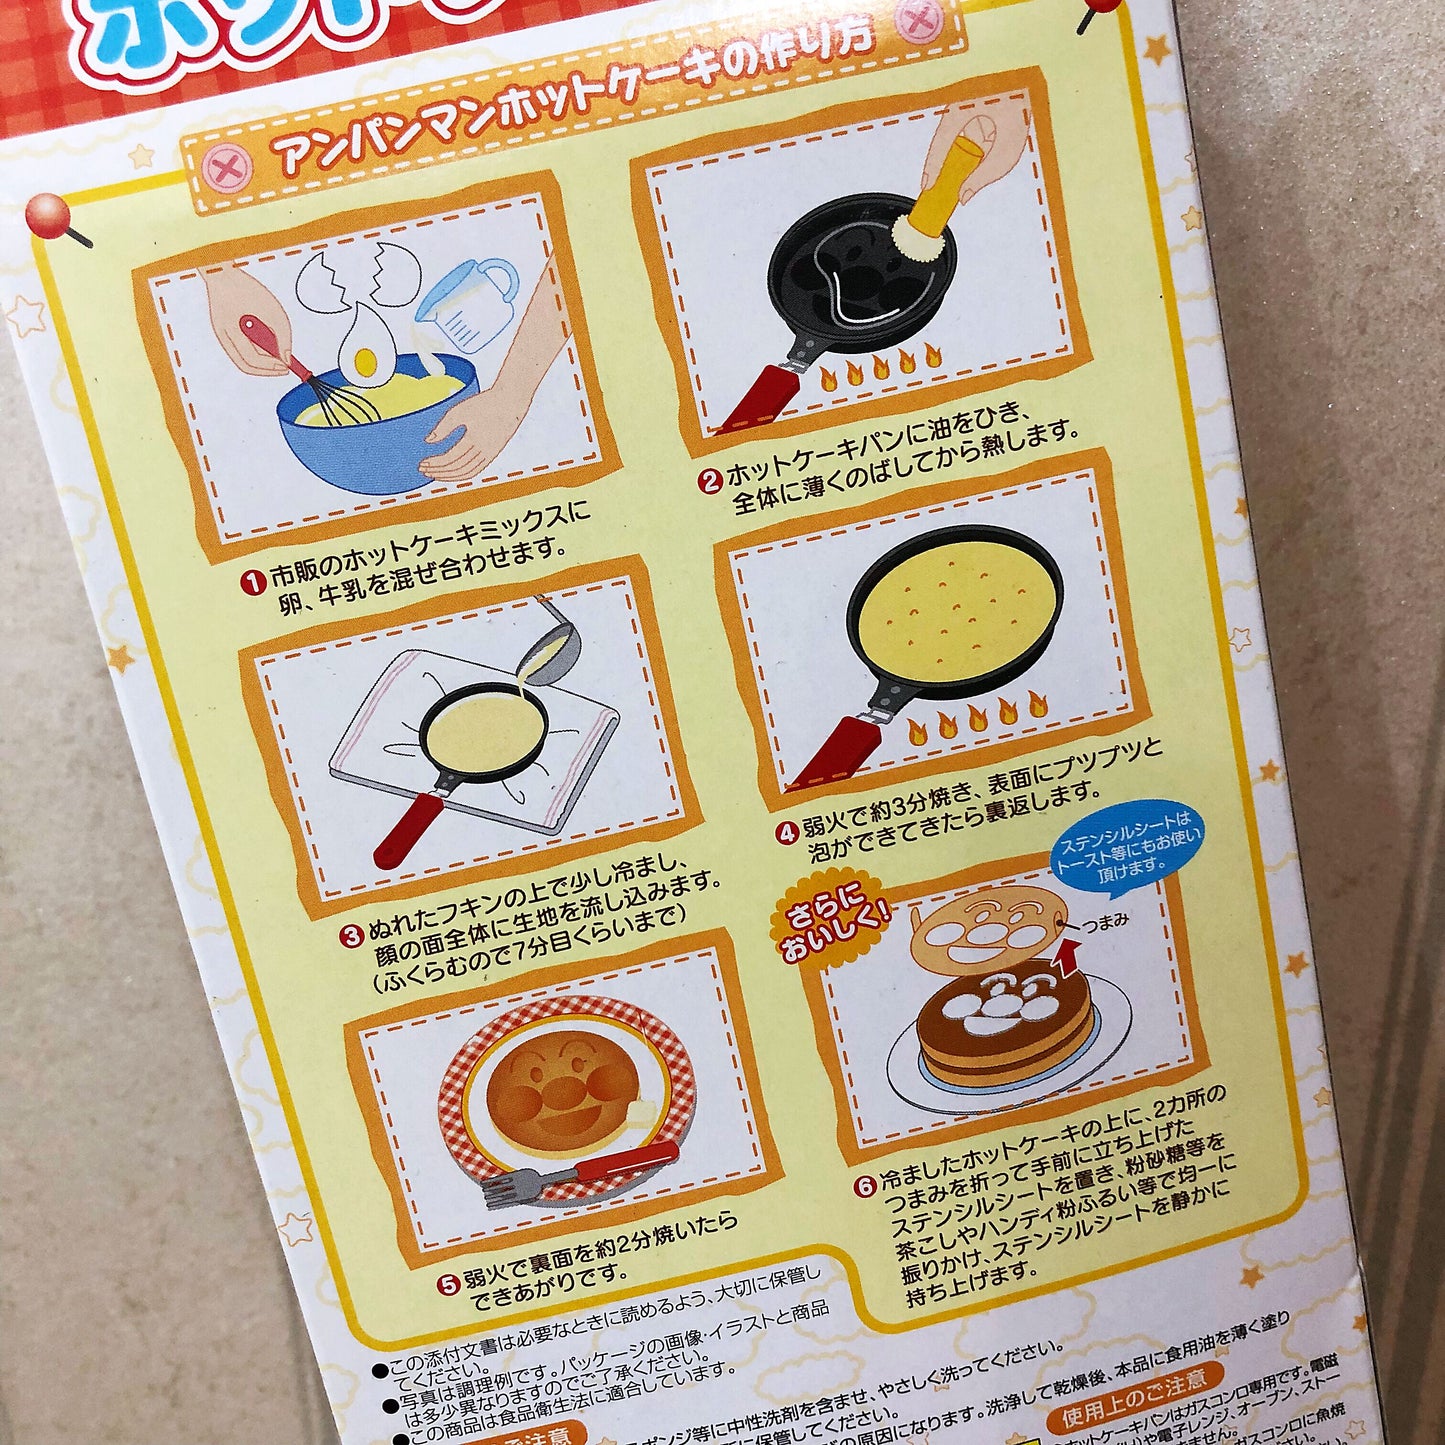 Anpanman Pancake Pan 面包超人煎饼锅